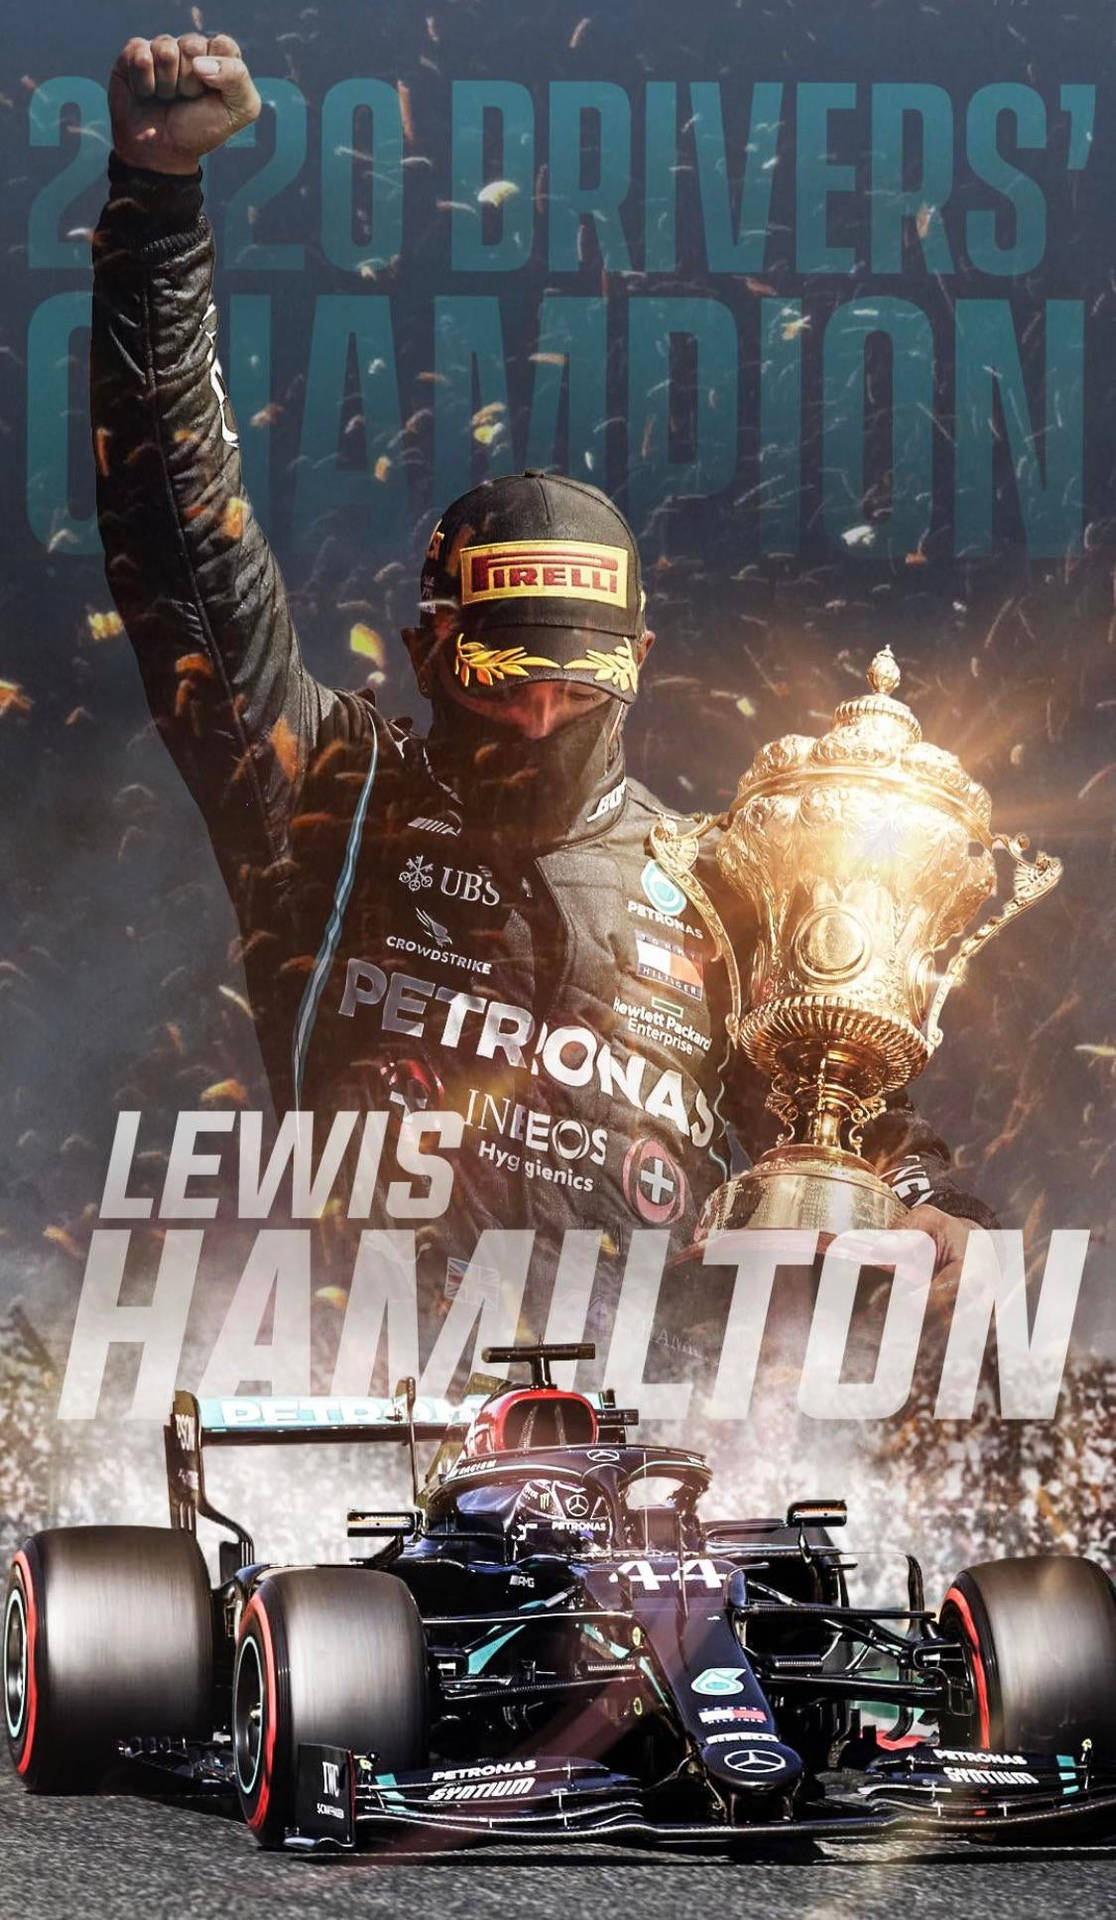 Lewis Hamilton er føreren for 2020-drejernes mester Wallpaper